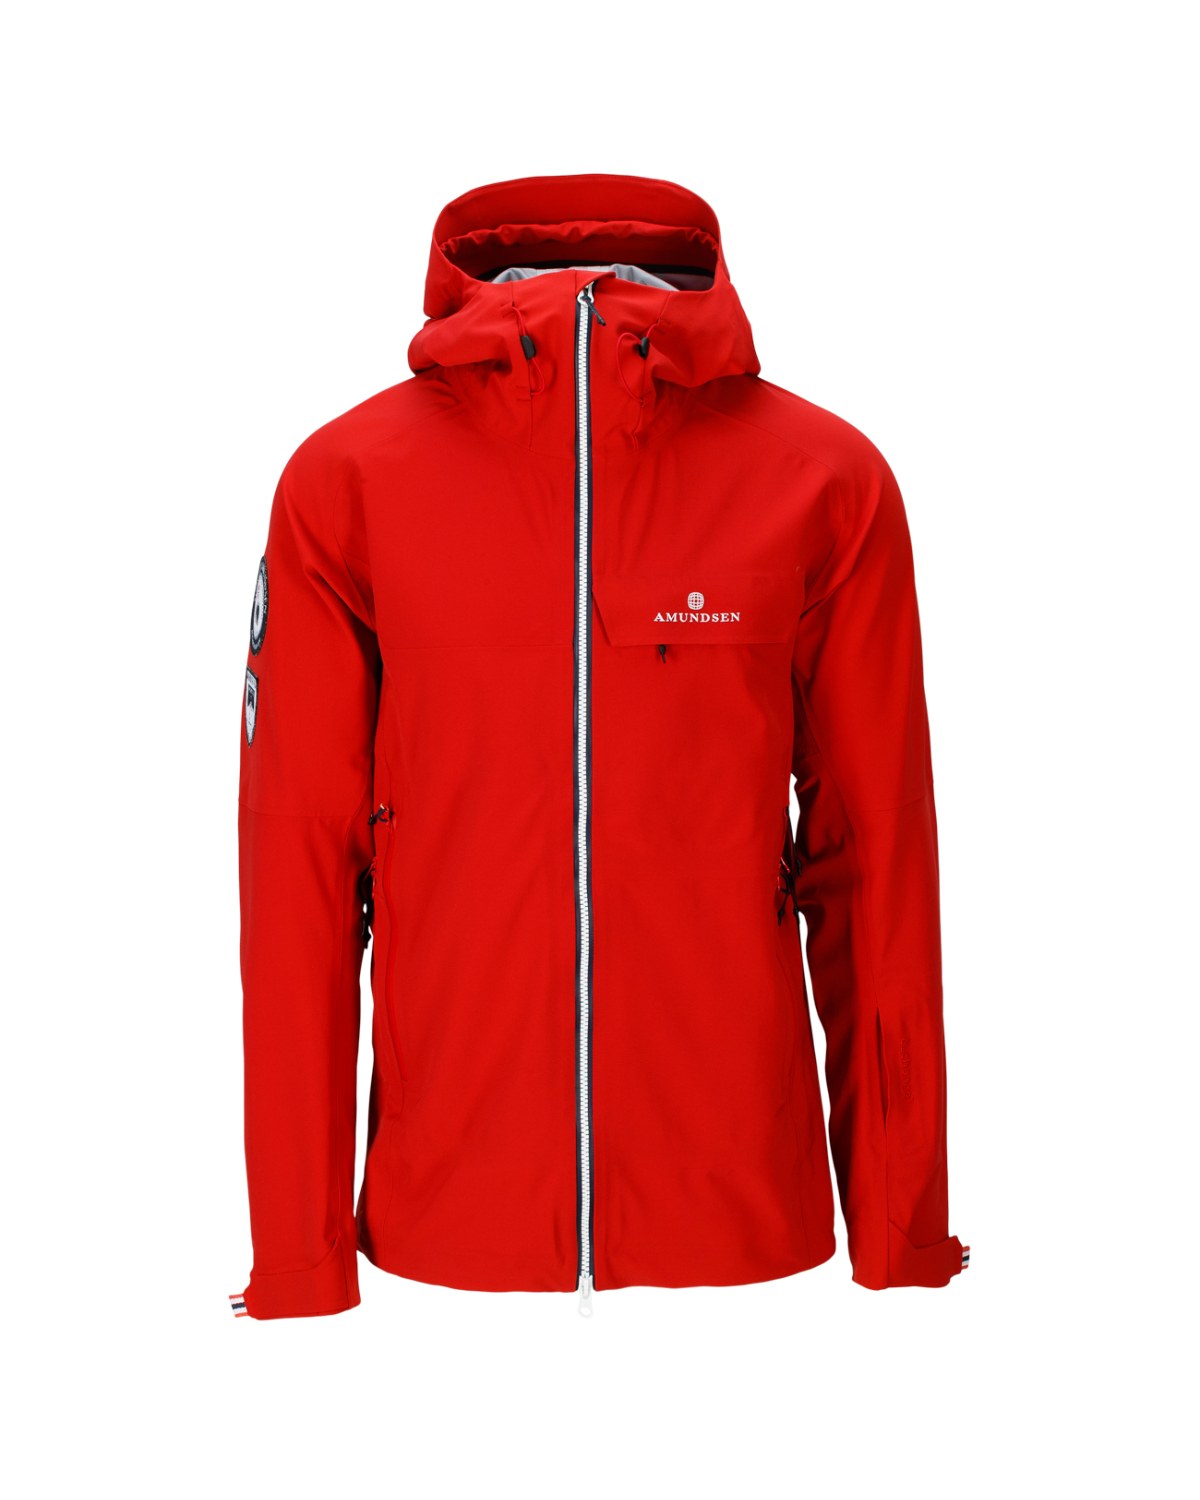 Amundsen Men's Peak Panther Ski Jacket in Red